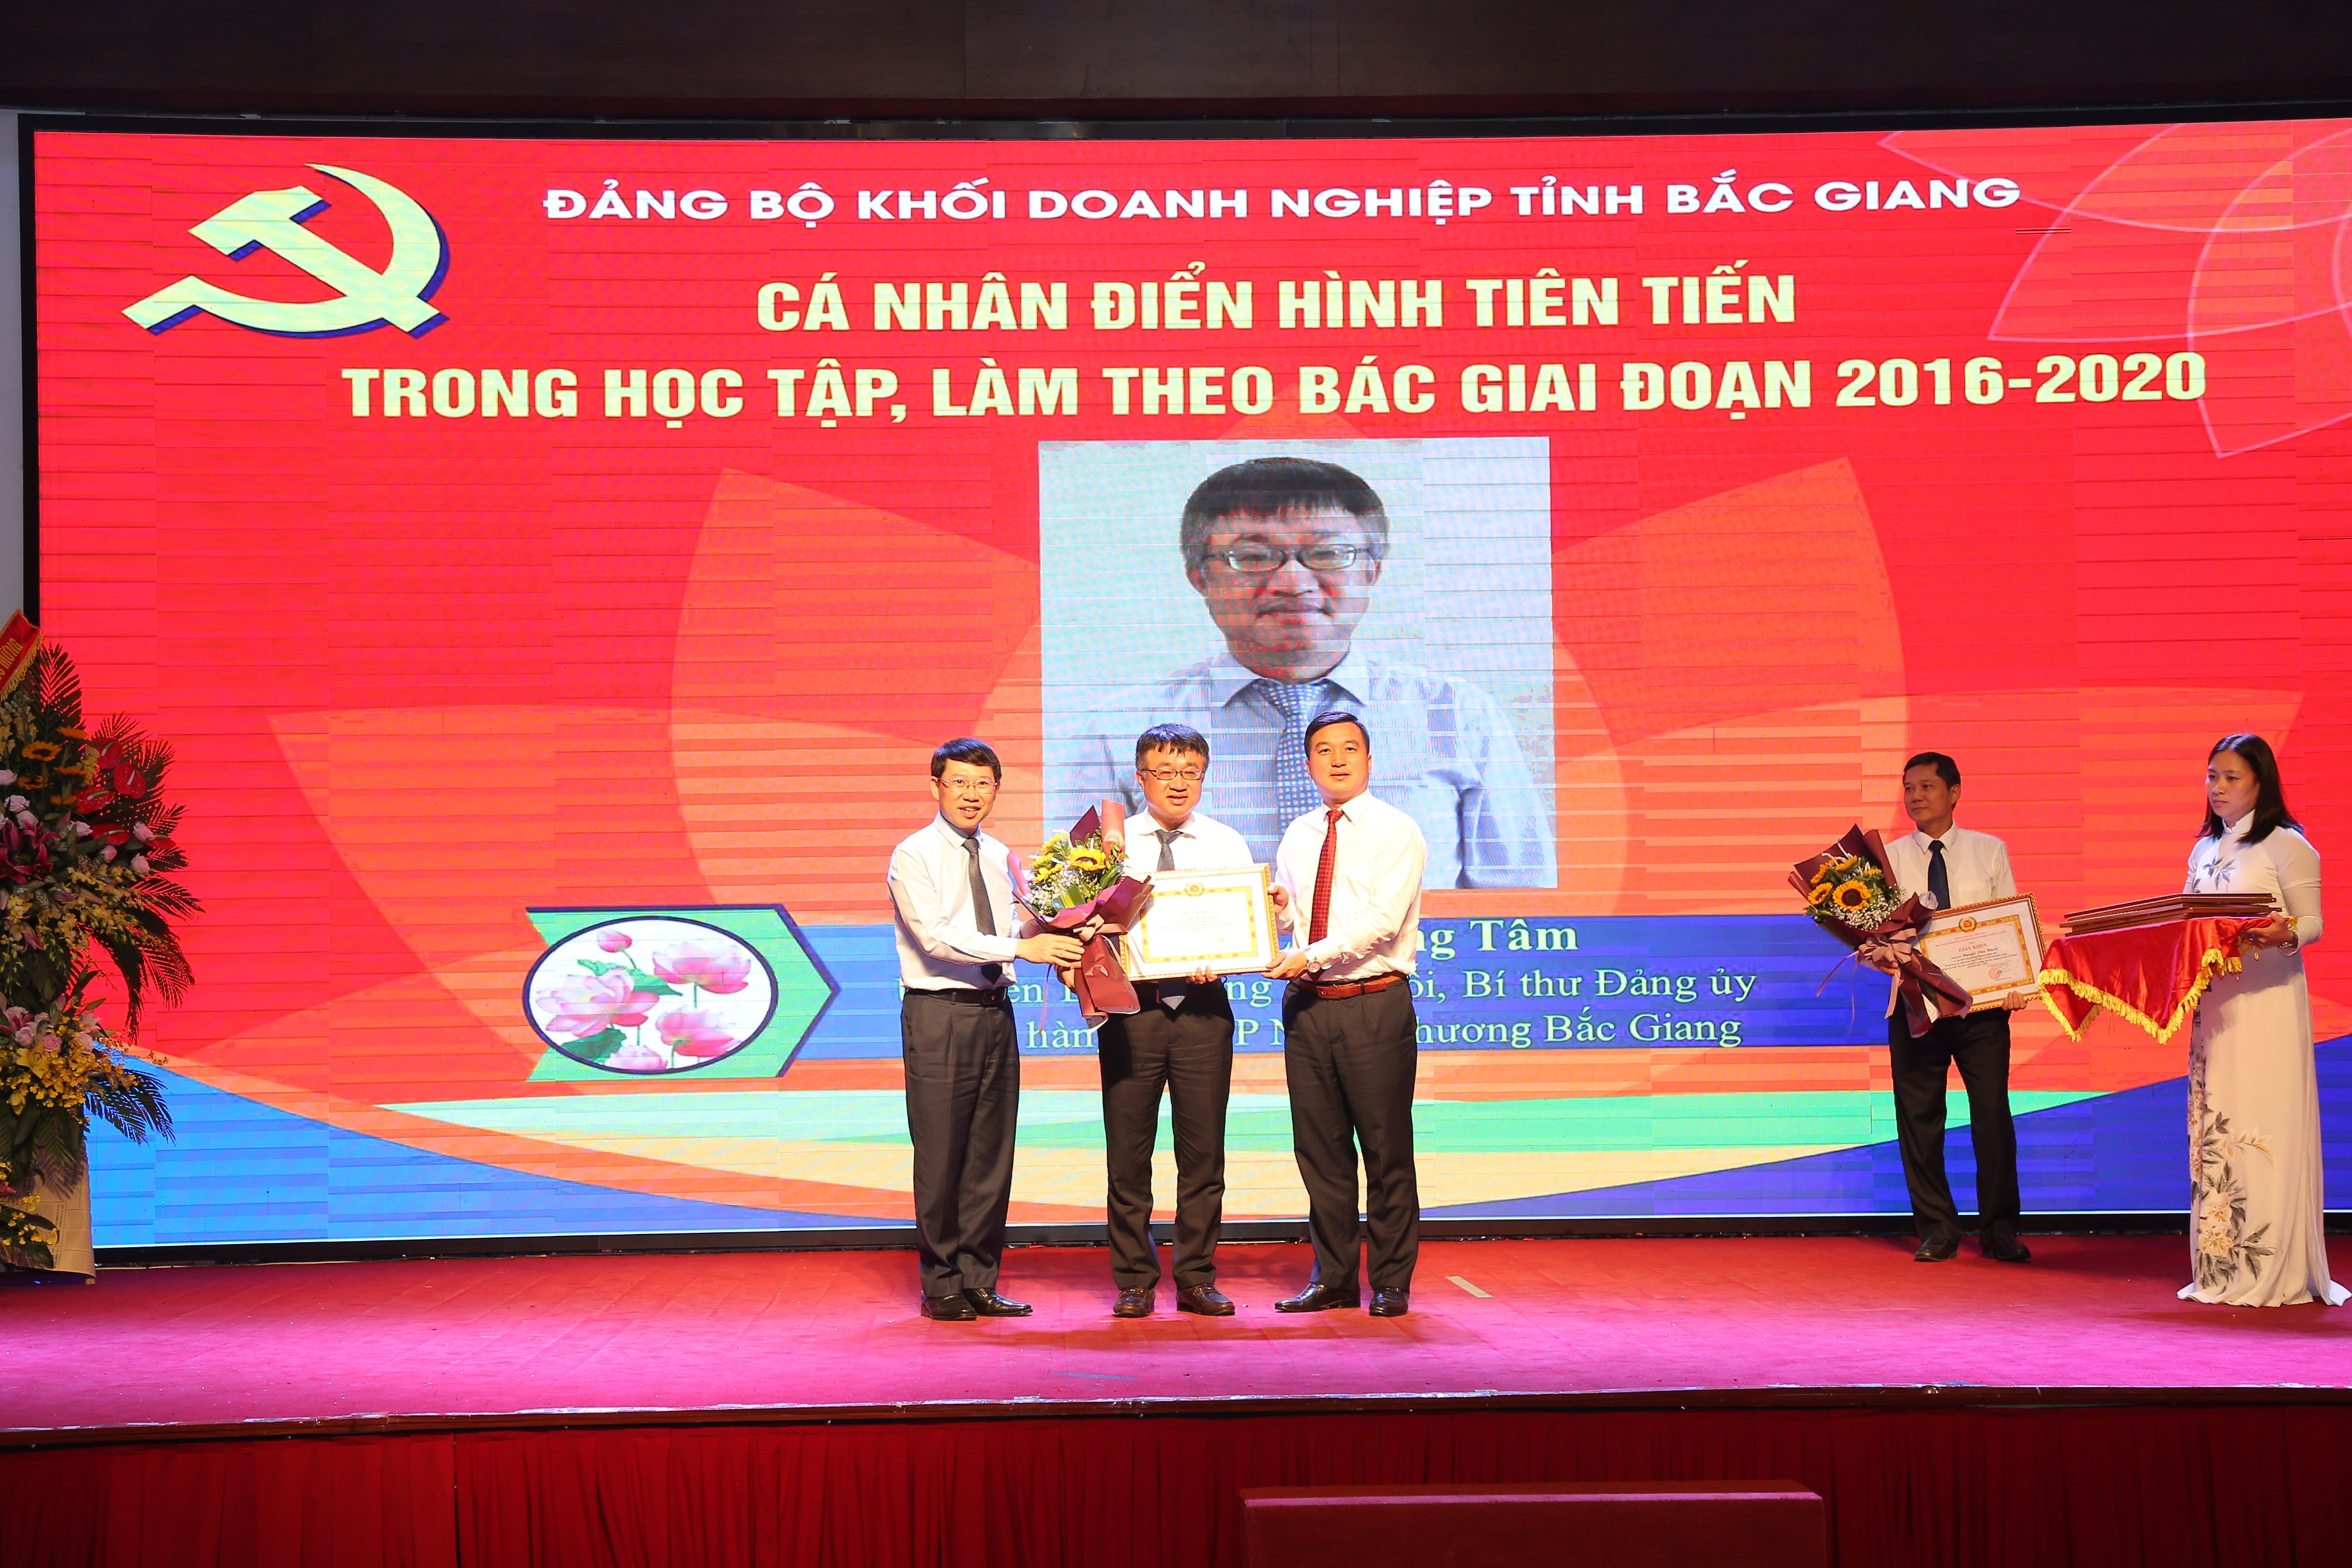 Giám đốc Vietcombank Bắc Giang vinh dự nhận giấy khen của Đảng ủy Khối Doanh nghiệp tỉnh Bắc Giang 